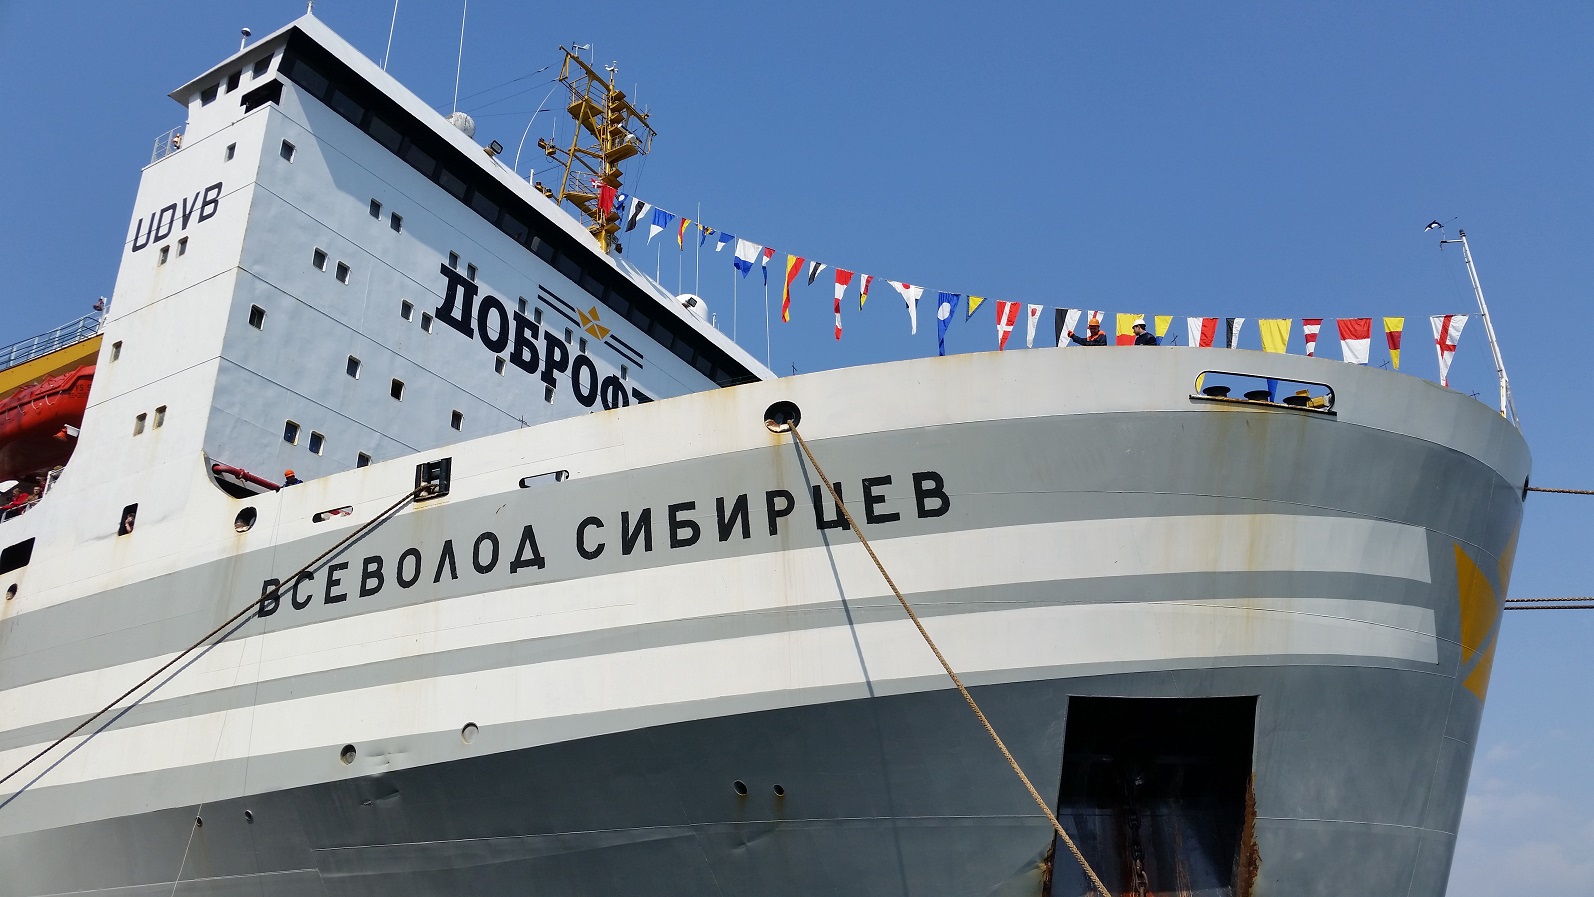 Portnews: Плавзавод «Всеволод Сибирцев» ГК «Доброфлот» обработал в море 64,6 тыс. тонн рыбы